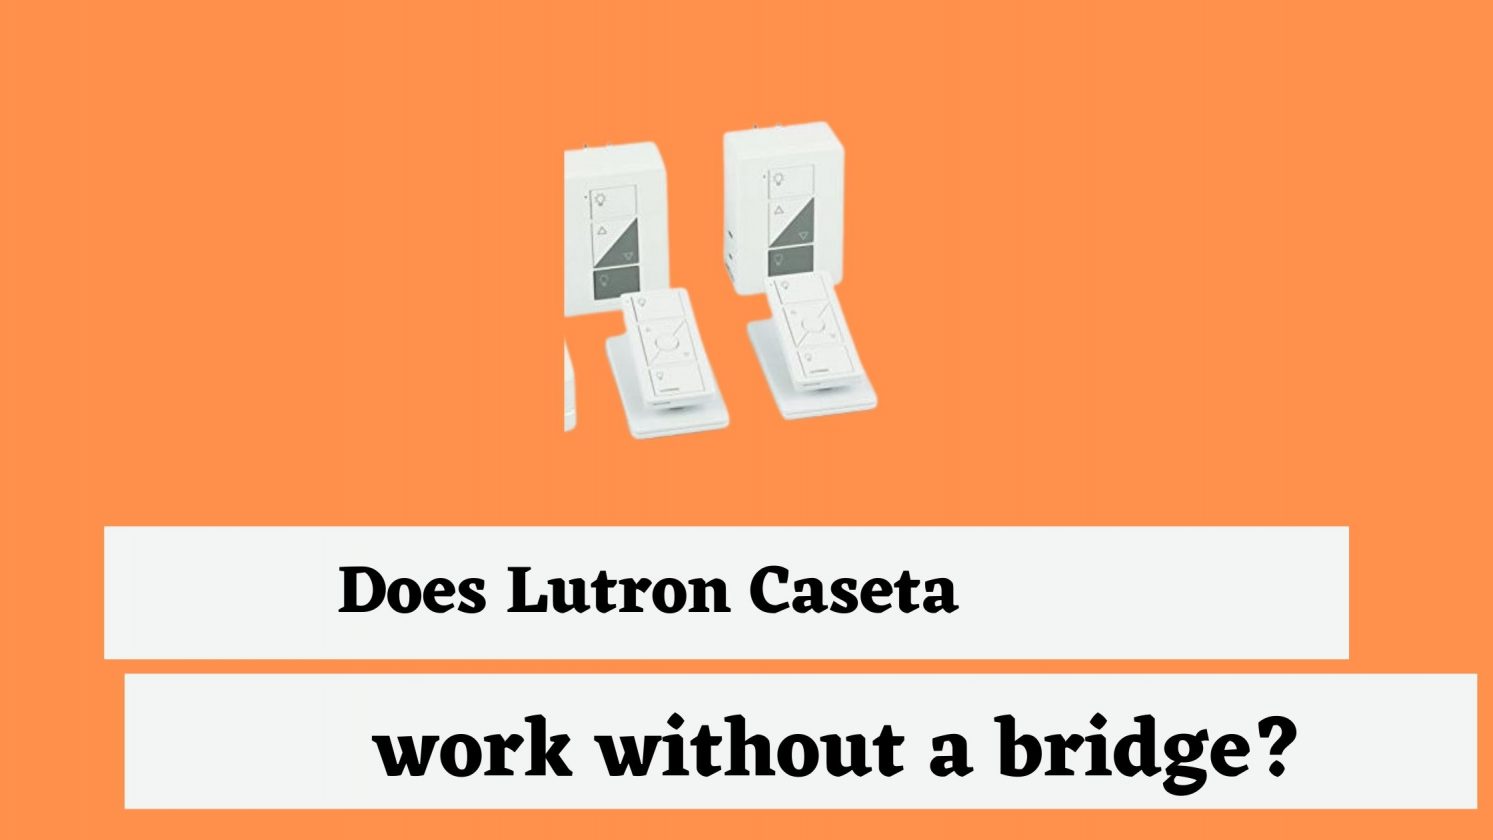 Does Lutron Caseta work without a bridge?